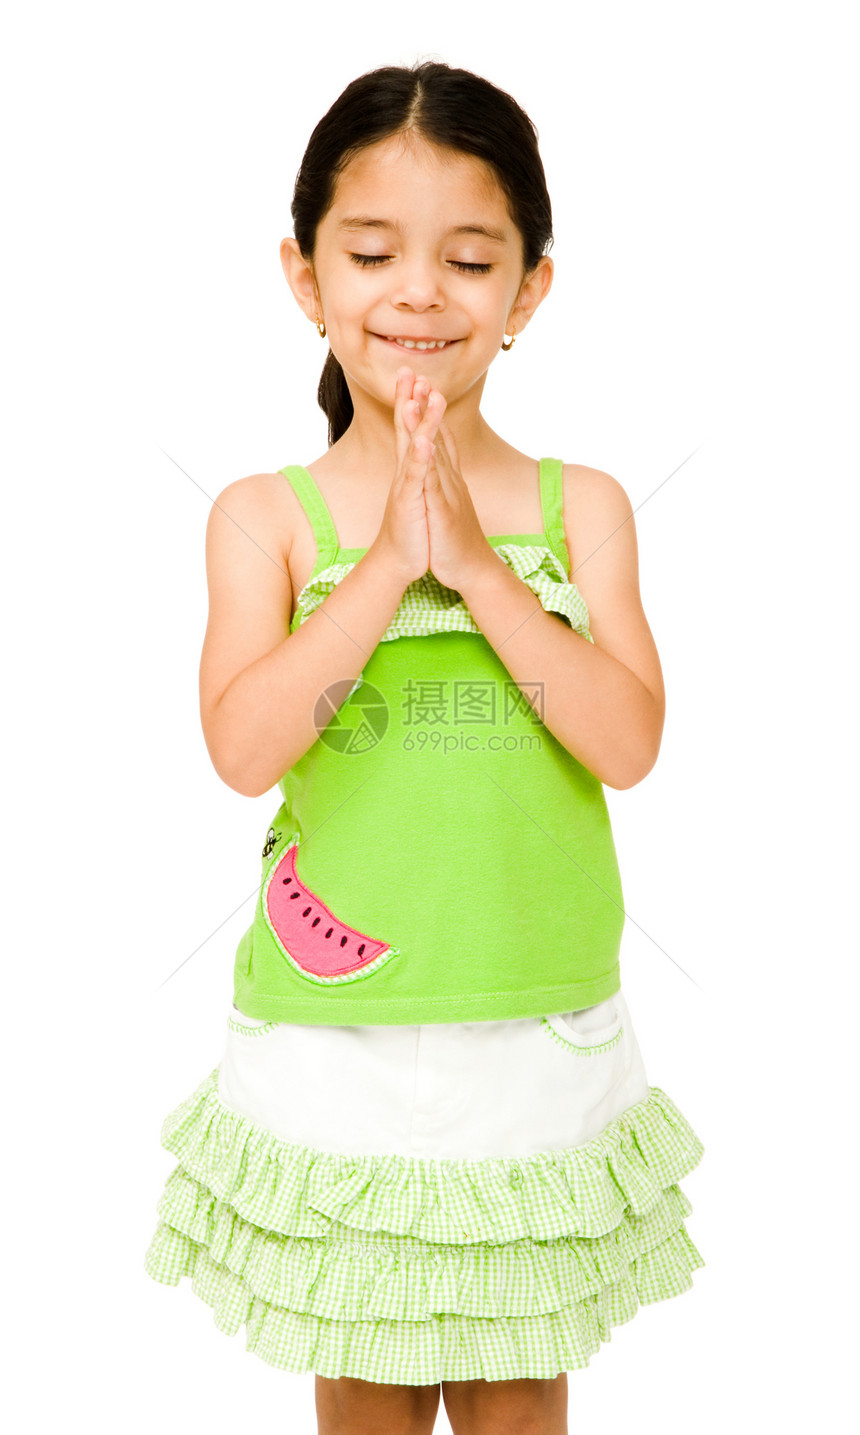 女孩站在祈祷的姿势上图片